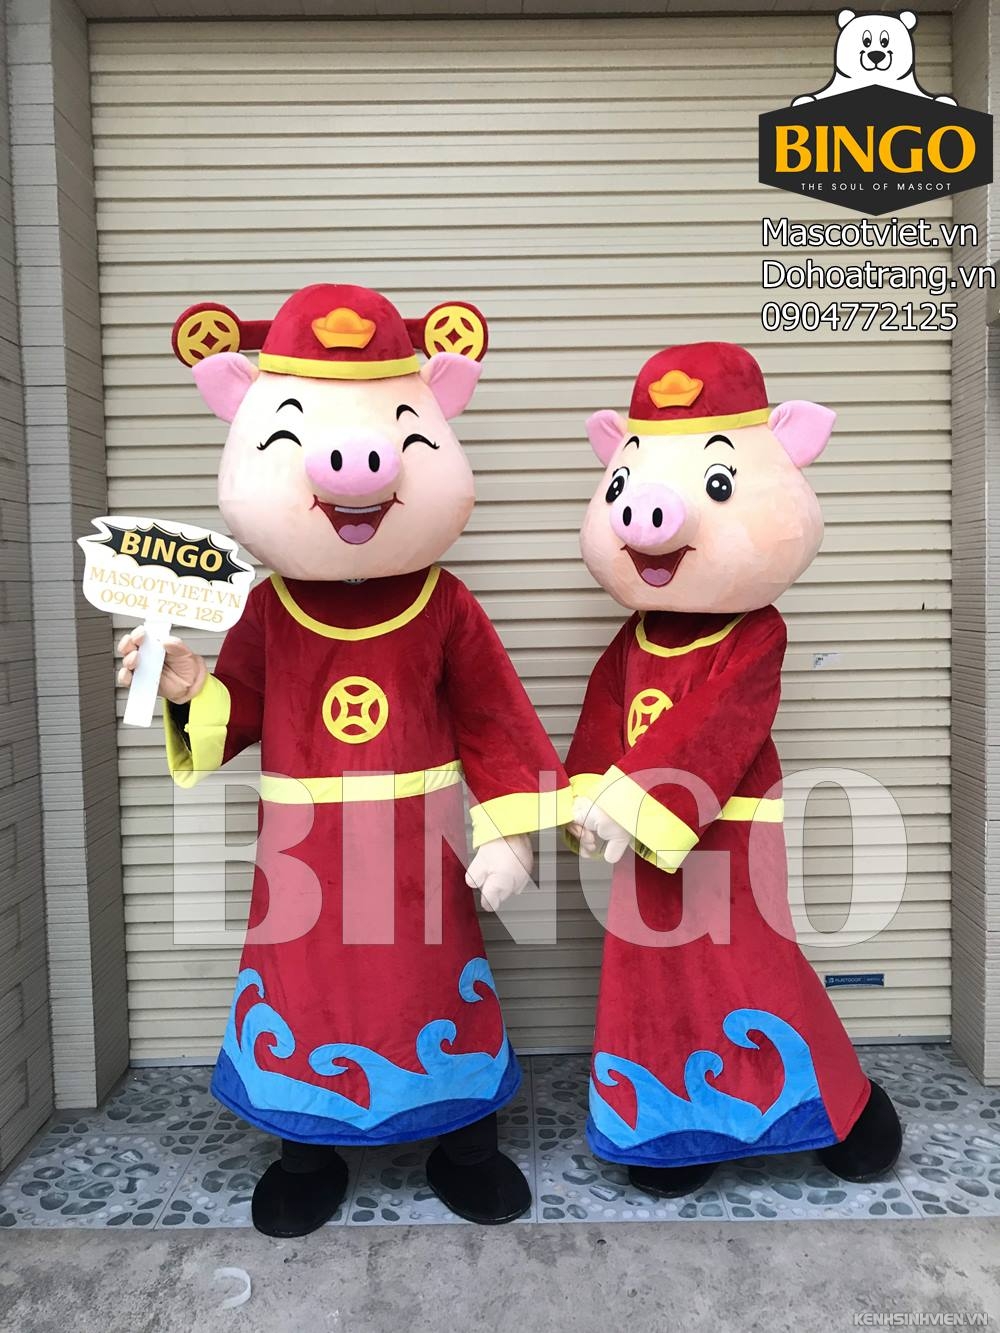 mascot-heo-than-tai-bingo-costumes-0904772125-2-.jpg